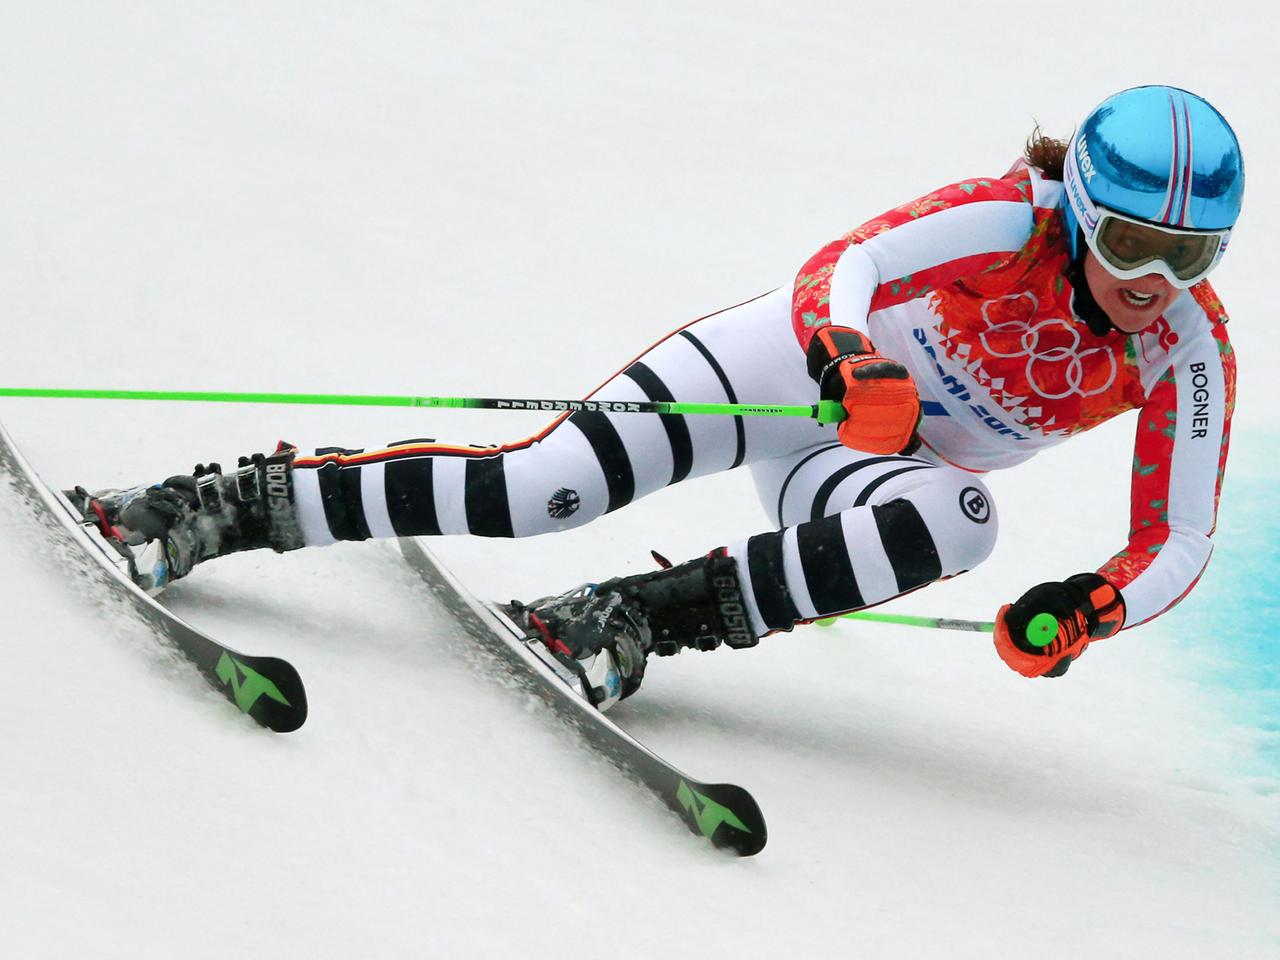 Viktoria Rebensburg legt sich mit ihren Skiern beim Abfahrtslauf in eine enge Linkskurve